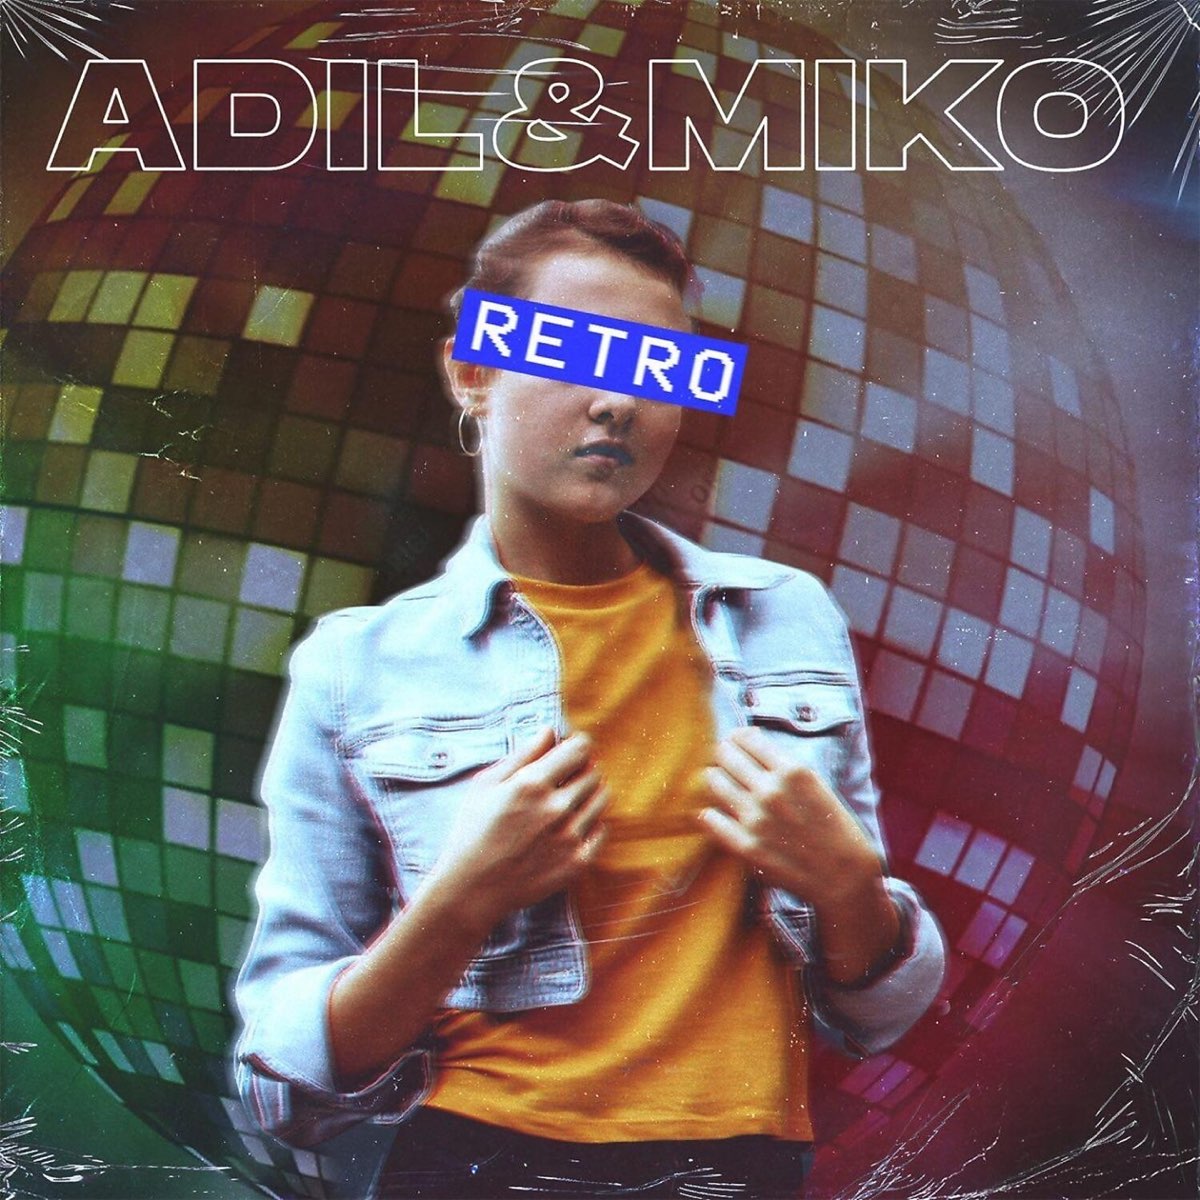 Alexander pierce adil. Miko – Retro. Мико Адиль ретро ремикс. Певец Miko Adil Retro. Miko – Retro (Alexander Pierce Remix).